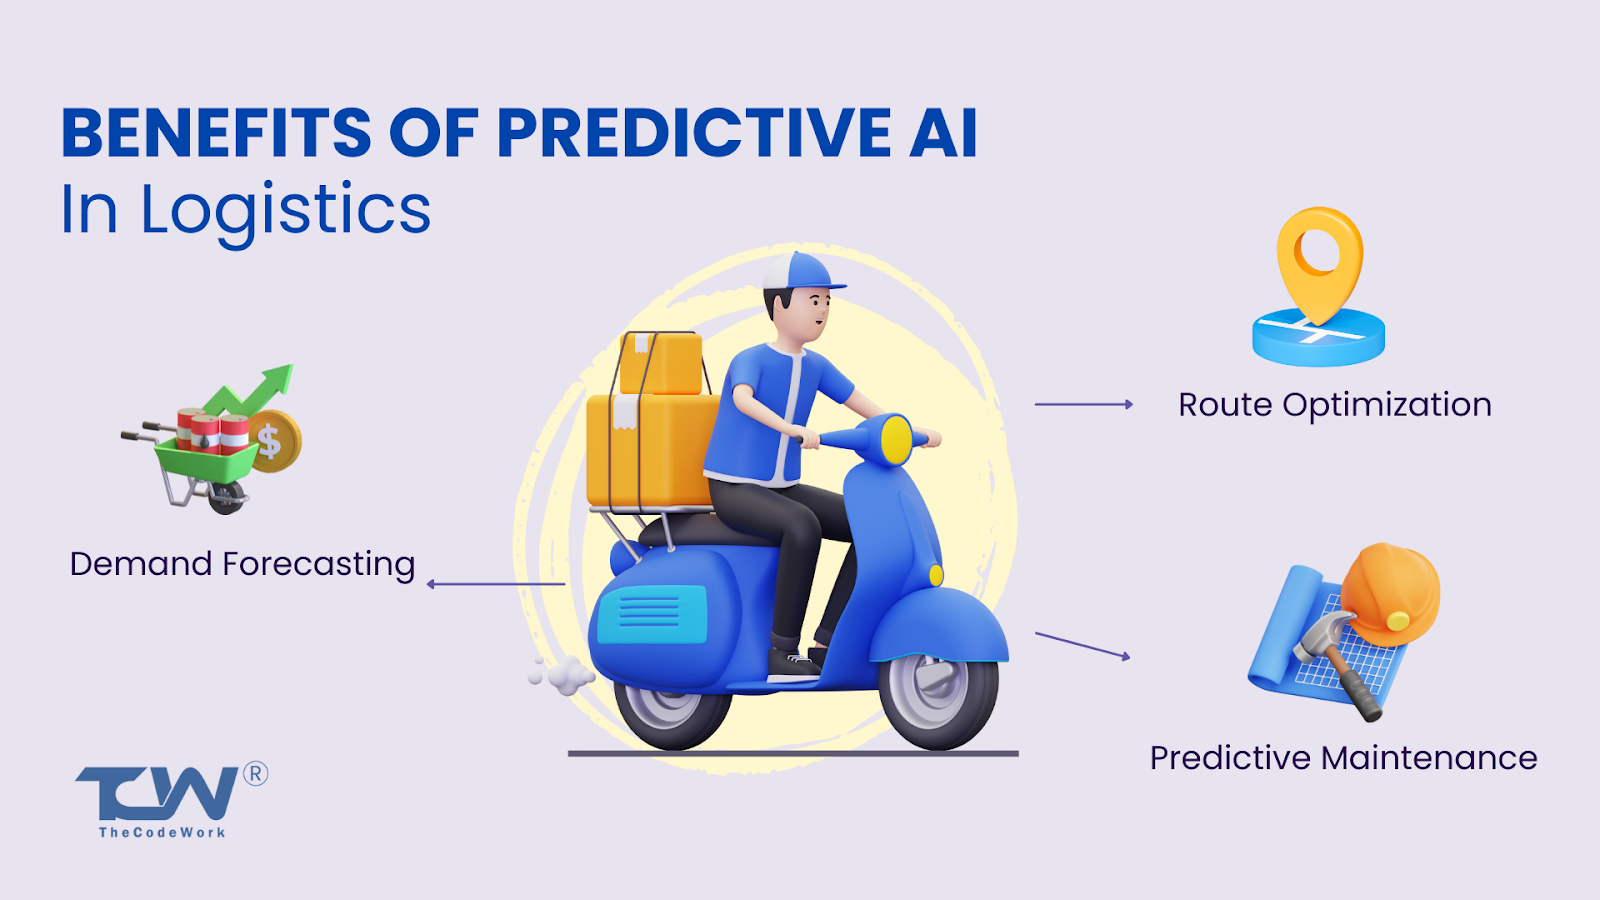 Predictive AI in logistics